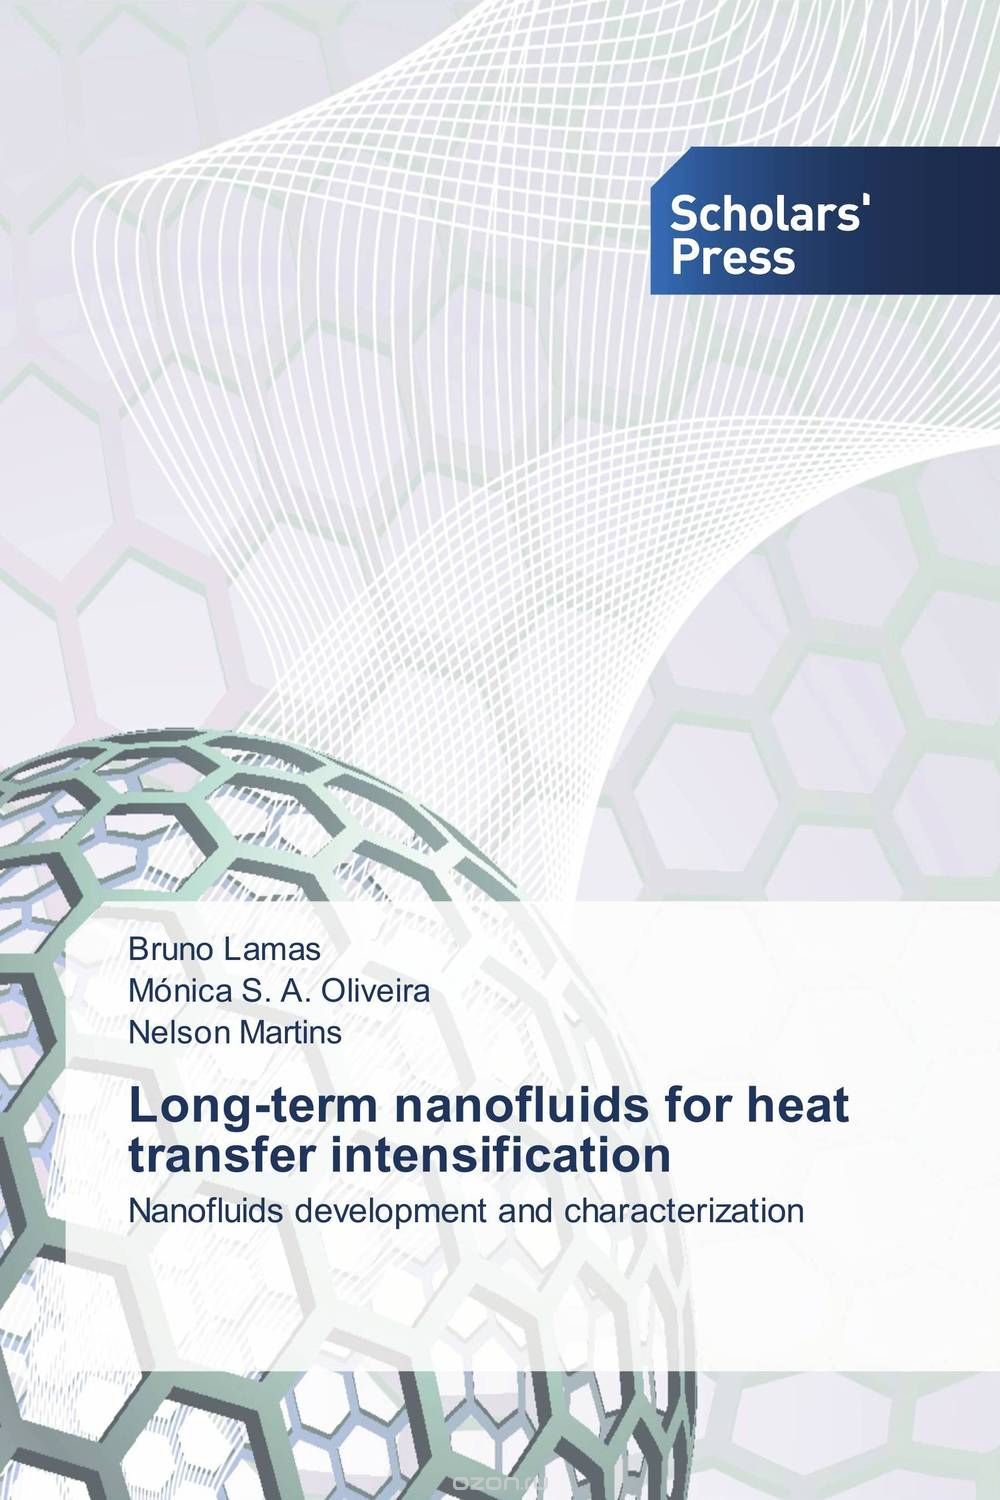 Скачать книгу "Long-term nanofluids for heat transfer intensification"